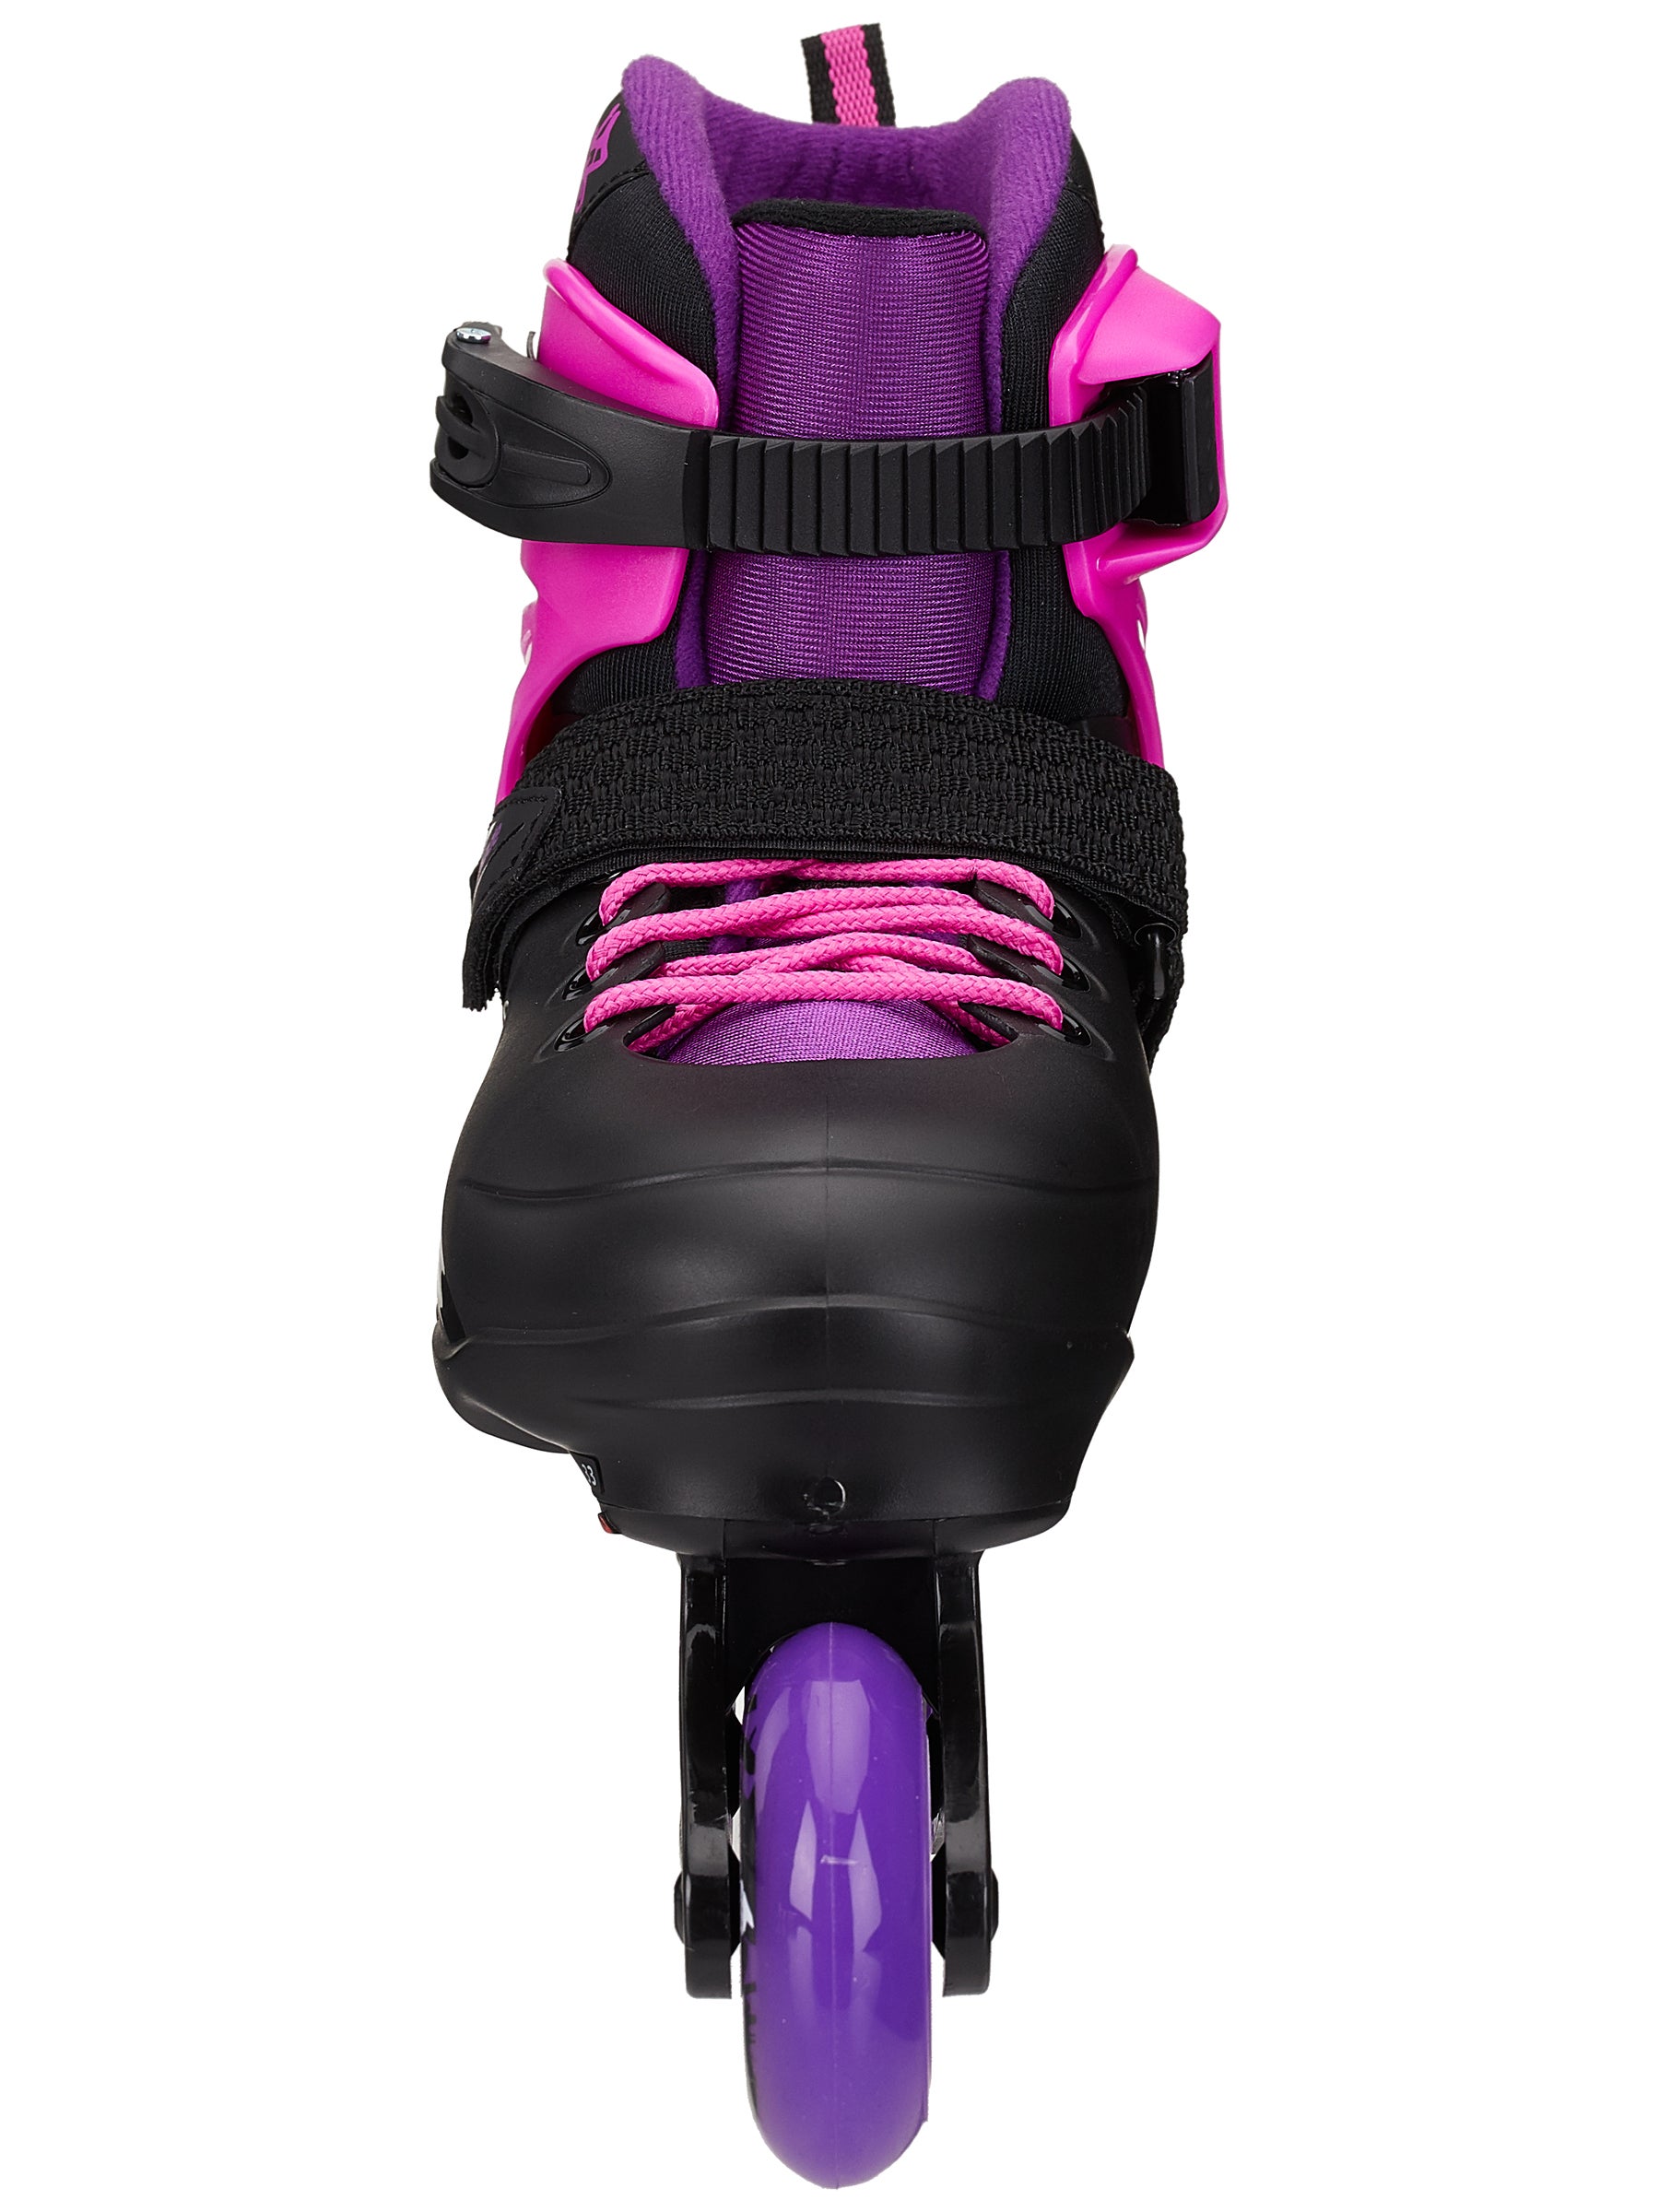 Details about   NEW Epic Skates Fury Adjustable Inline Skates w/ 4 Pink LED Light Up Wheels 